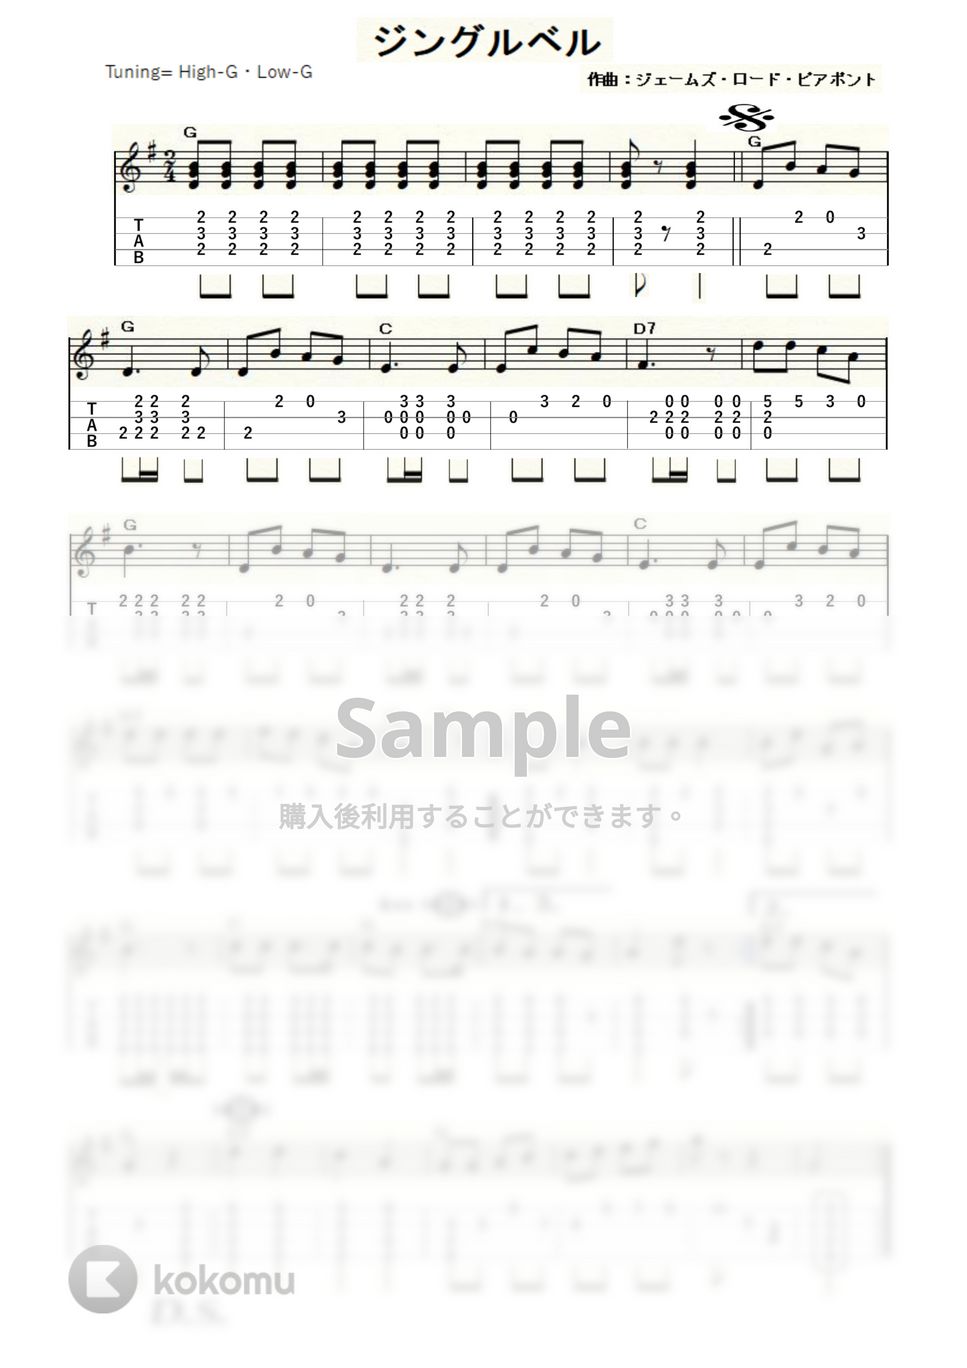 ジェームズ・ロード・ピアポント - ジングルベル (ｳｸﾚﾚｿﾛ / High-G,Low-G / 中級) by ukulelepapa